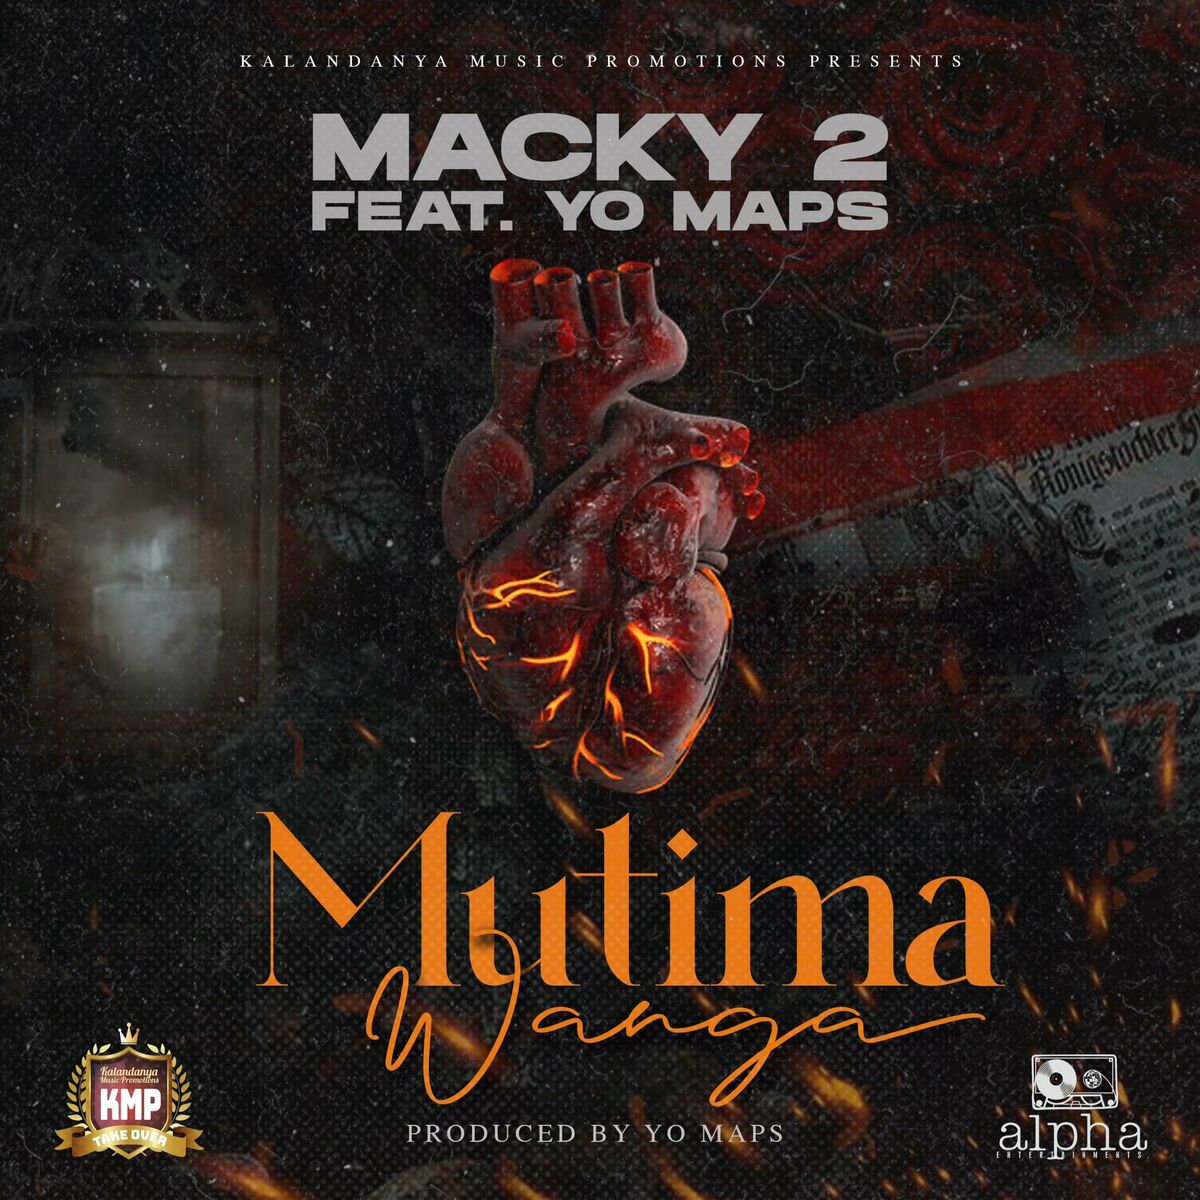 Macky 2 ft. Yo Maps - Mutima Wanga